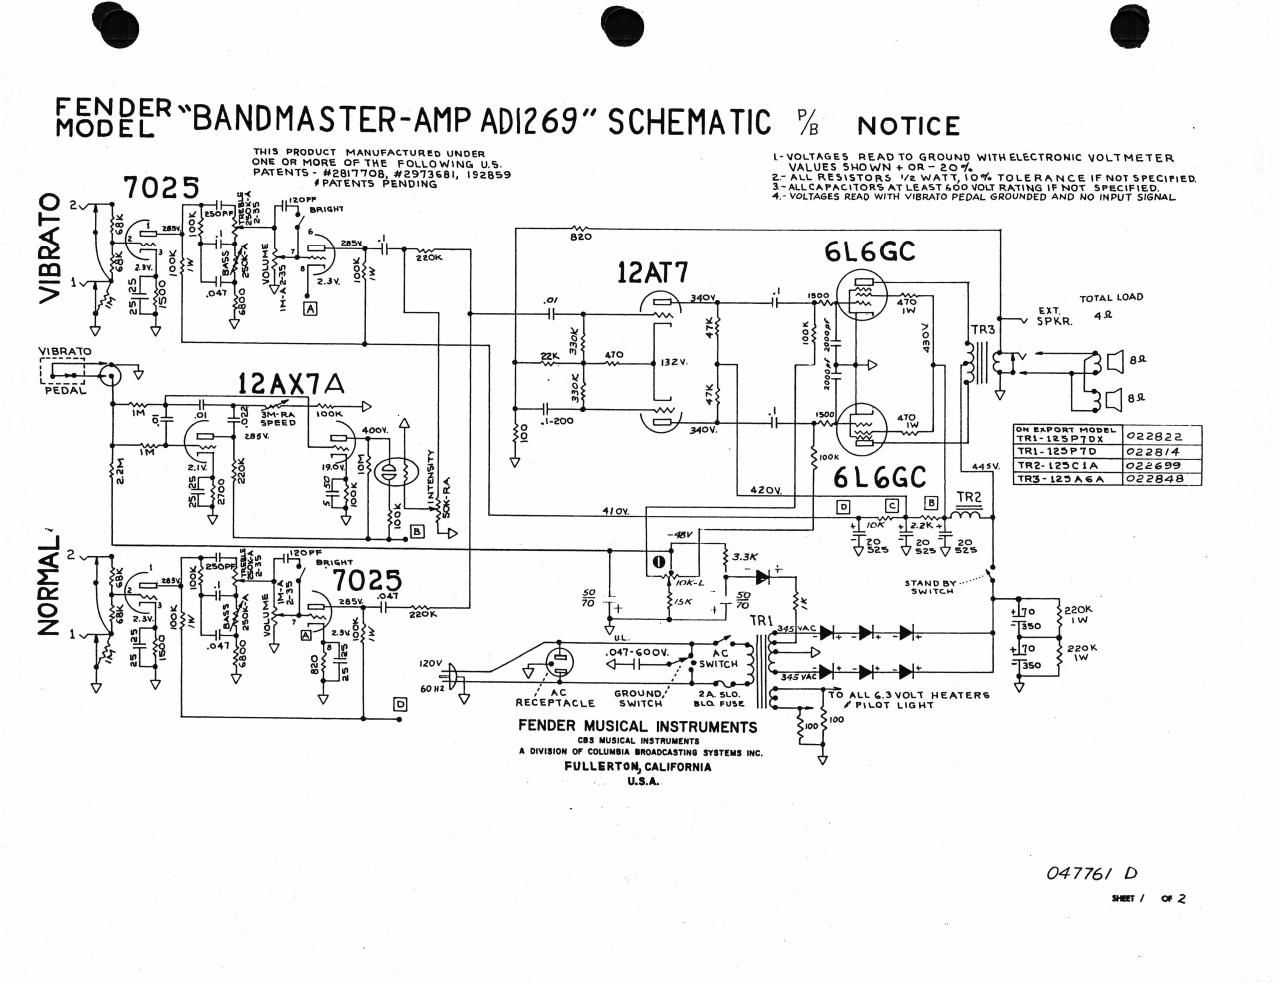 fender bandmaster ad1269 schematic